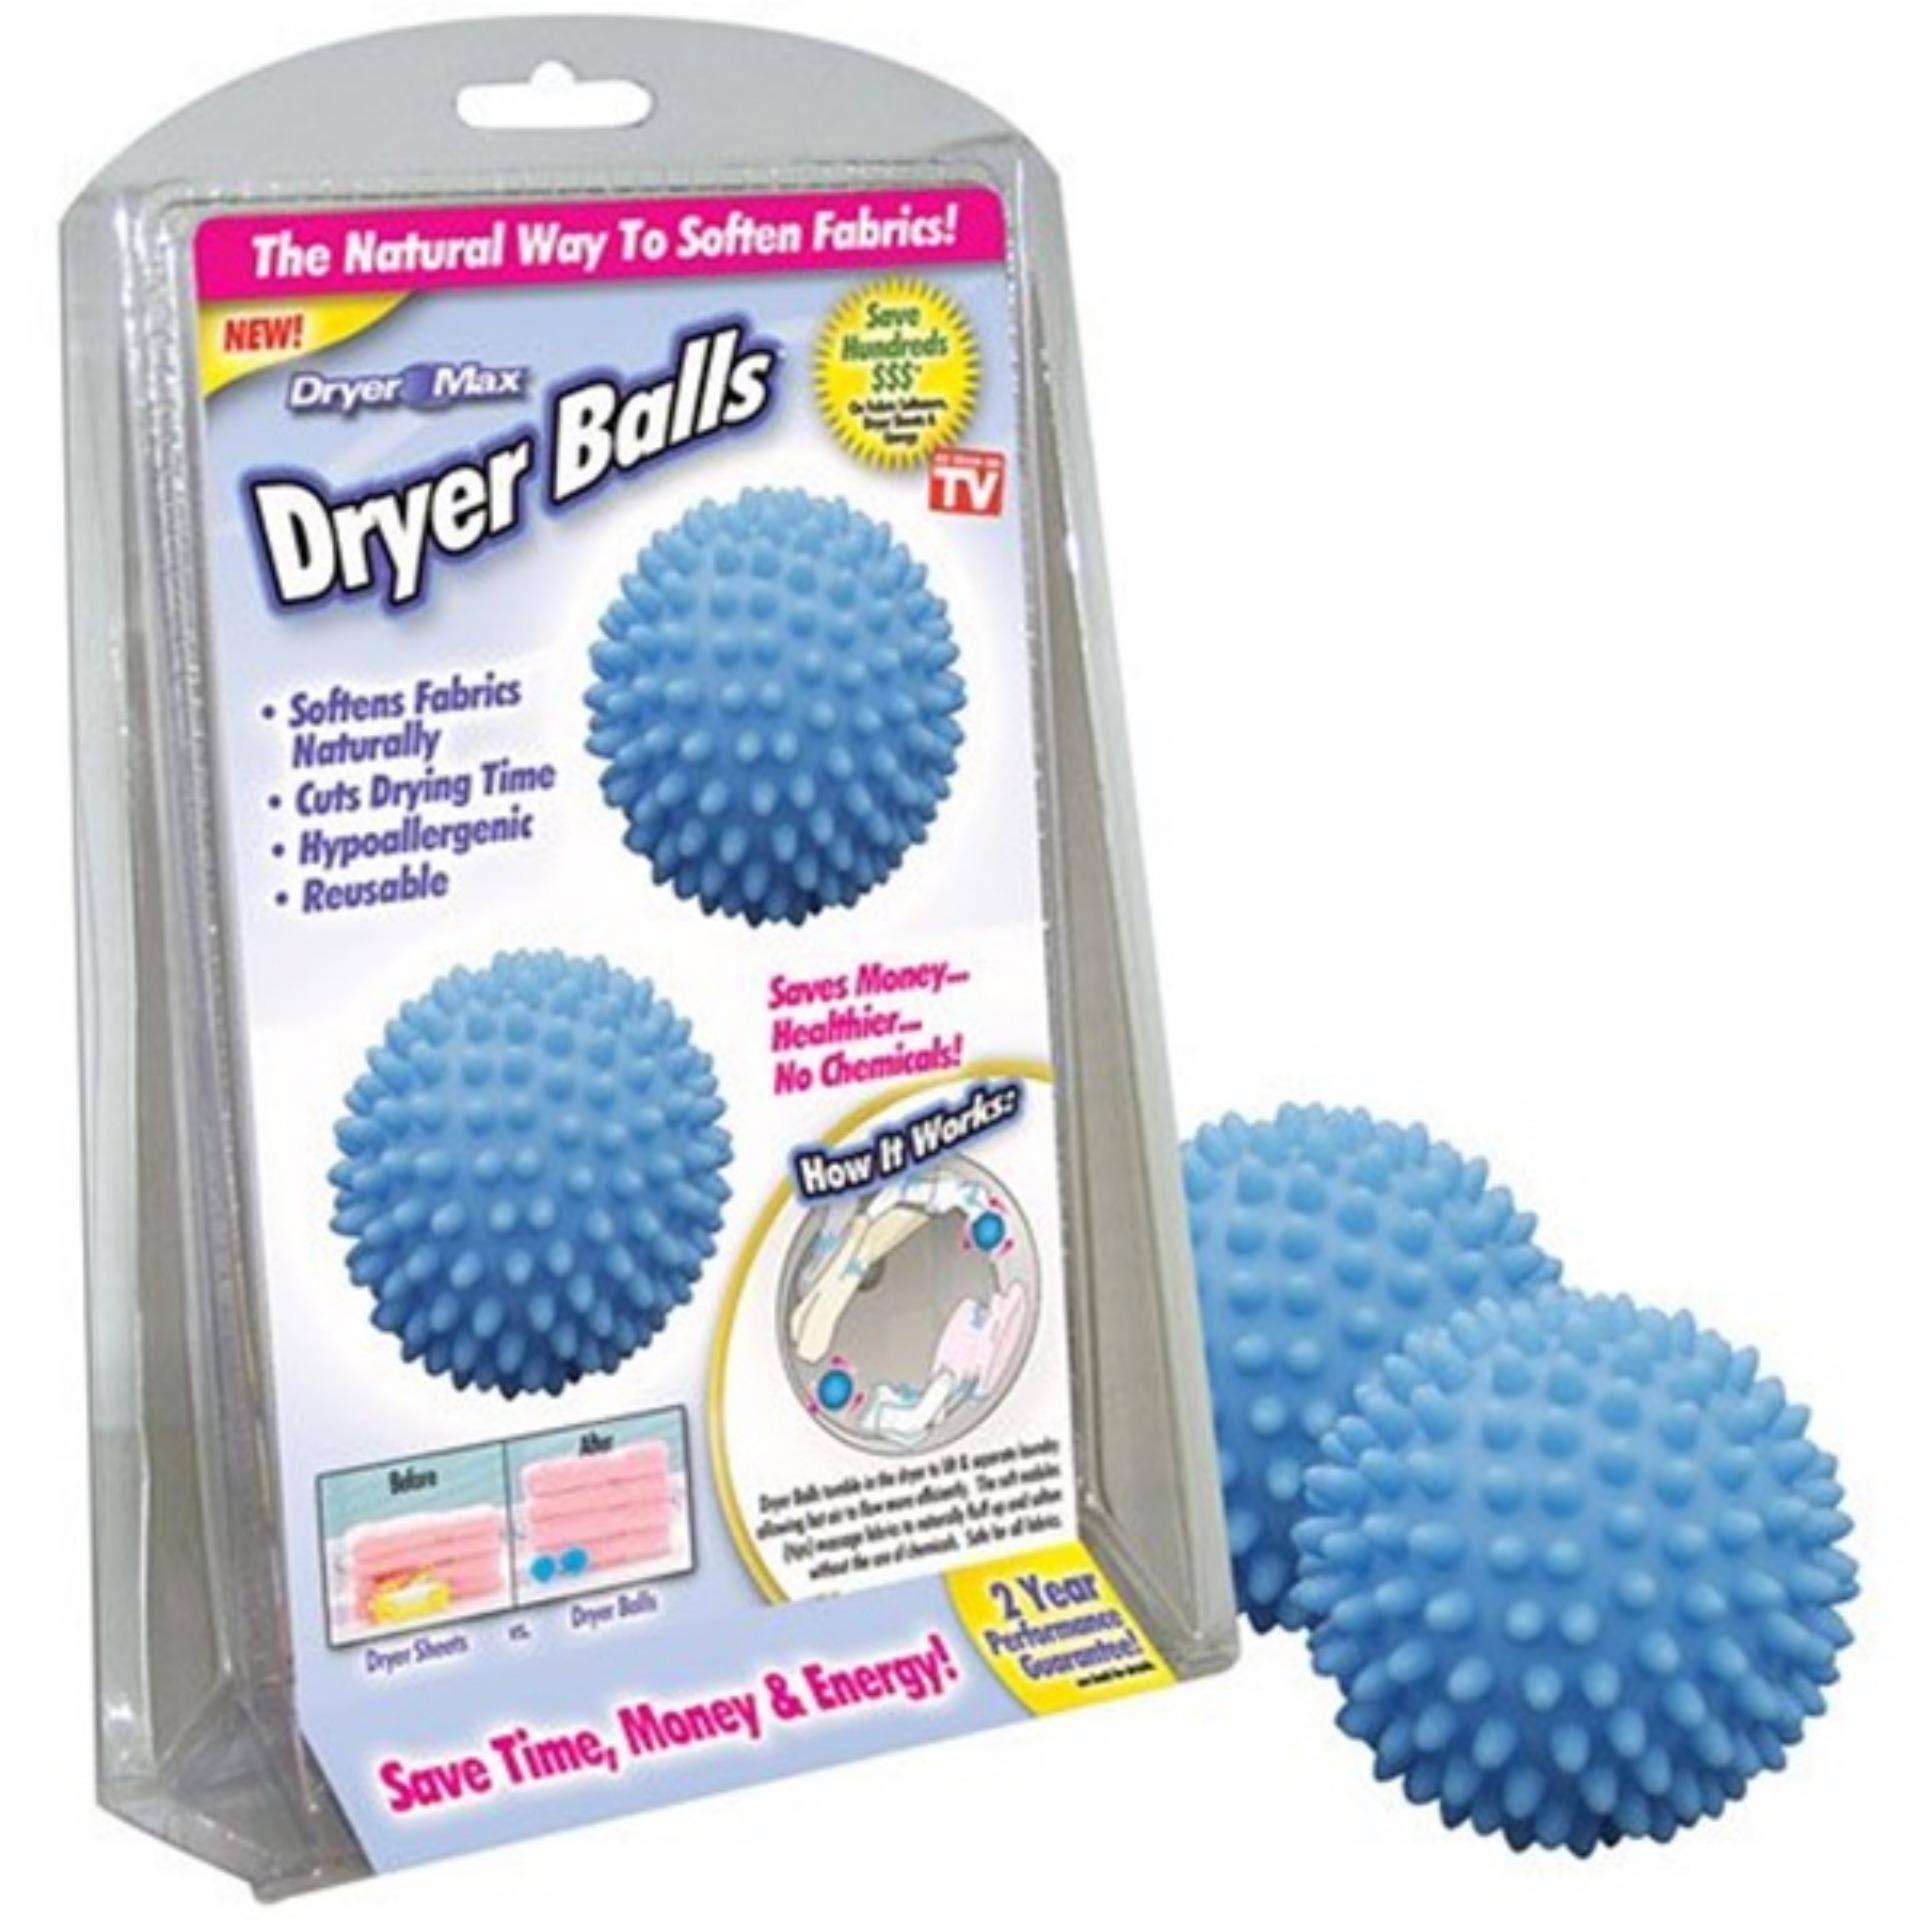 ลูกบอลซักผ้า Washing Dryer ball 4ชิ้น/แพ็ค ราคาพิเศษ